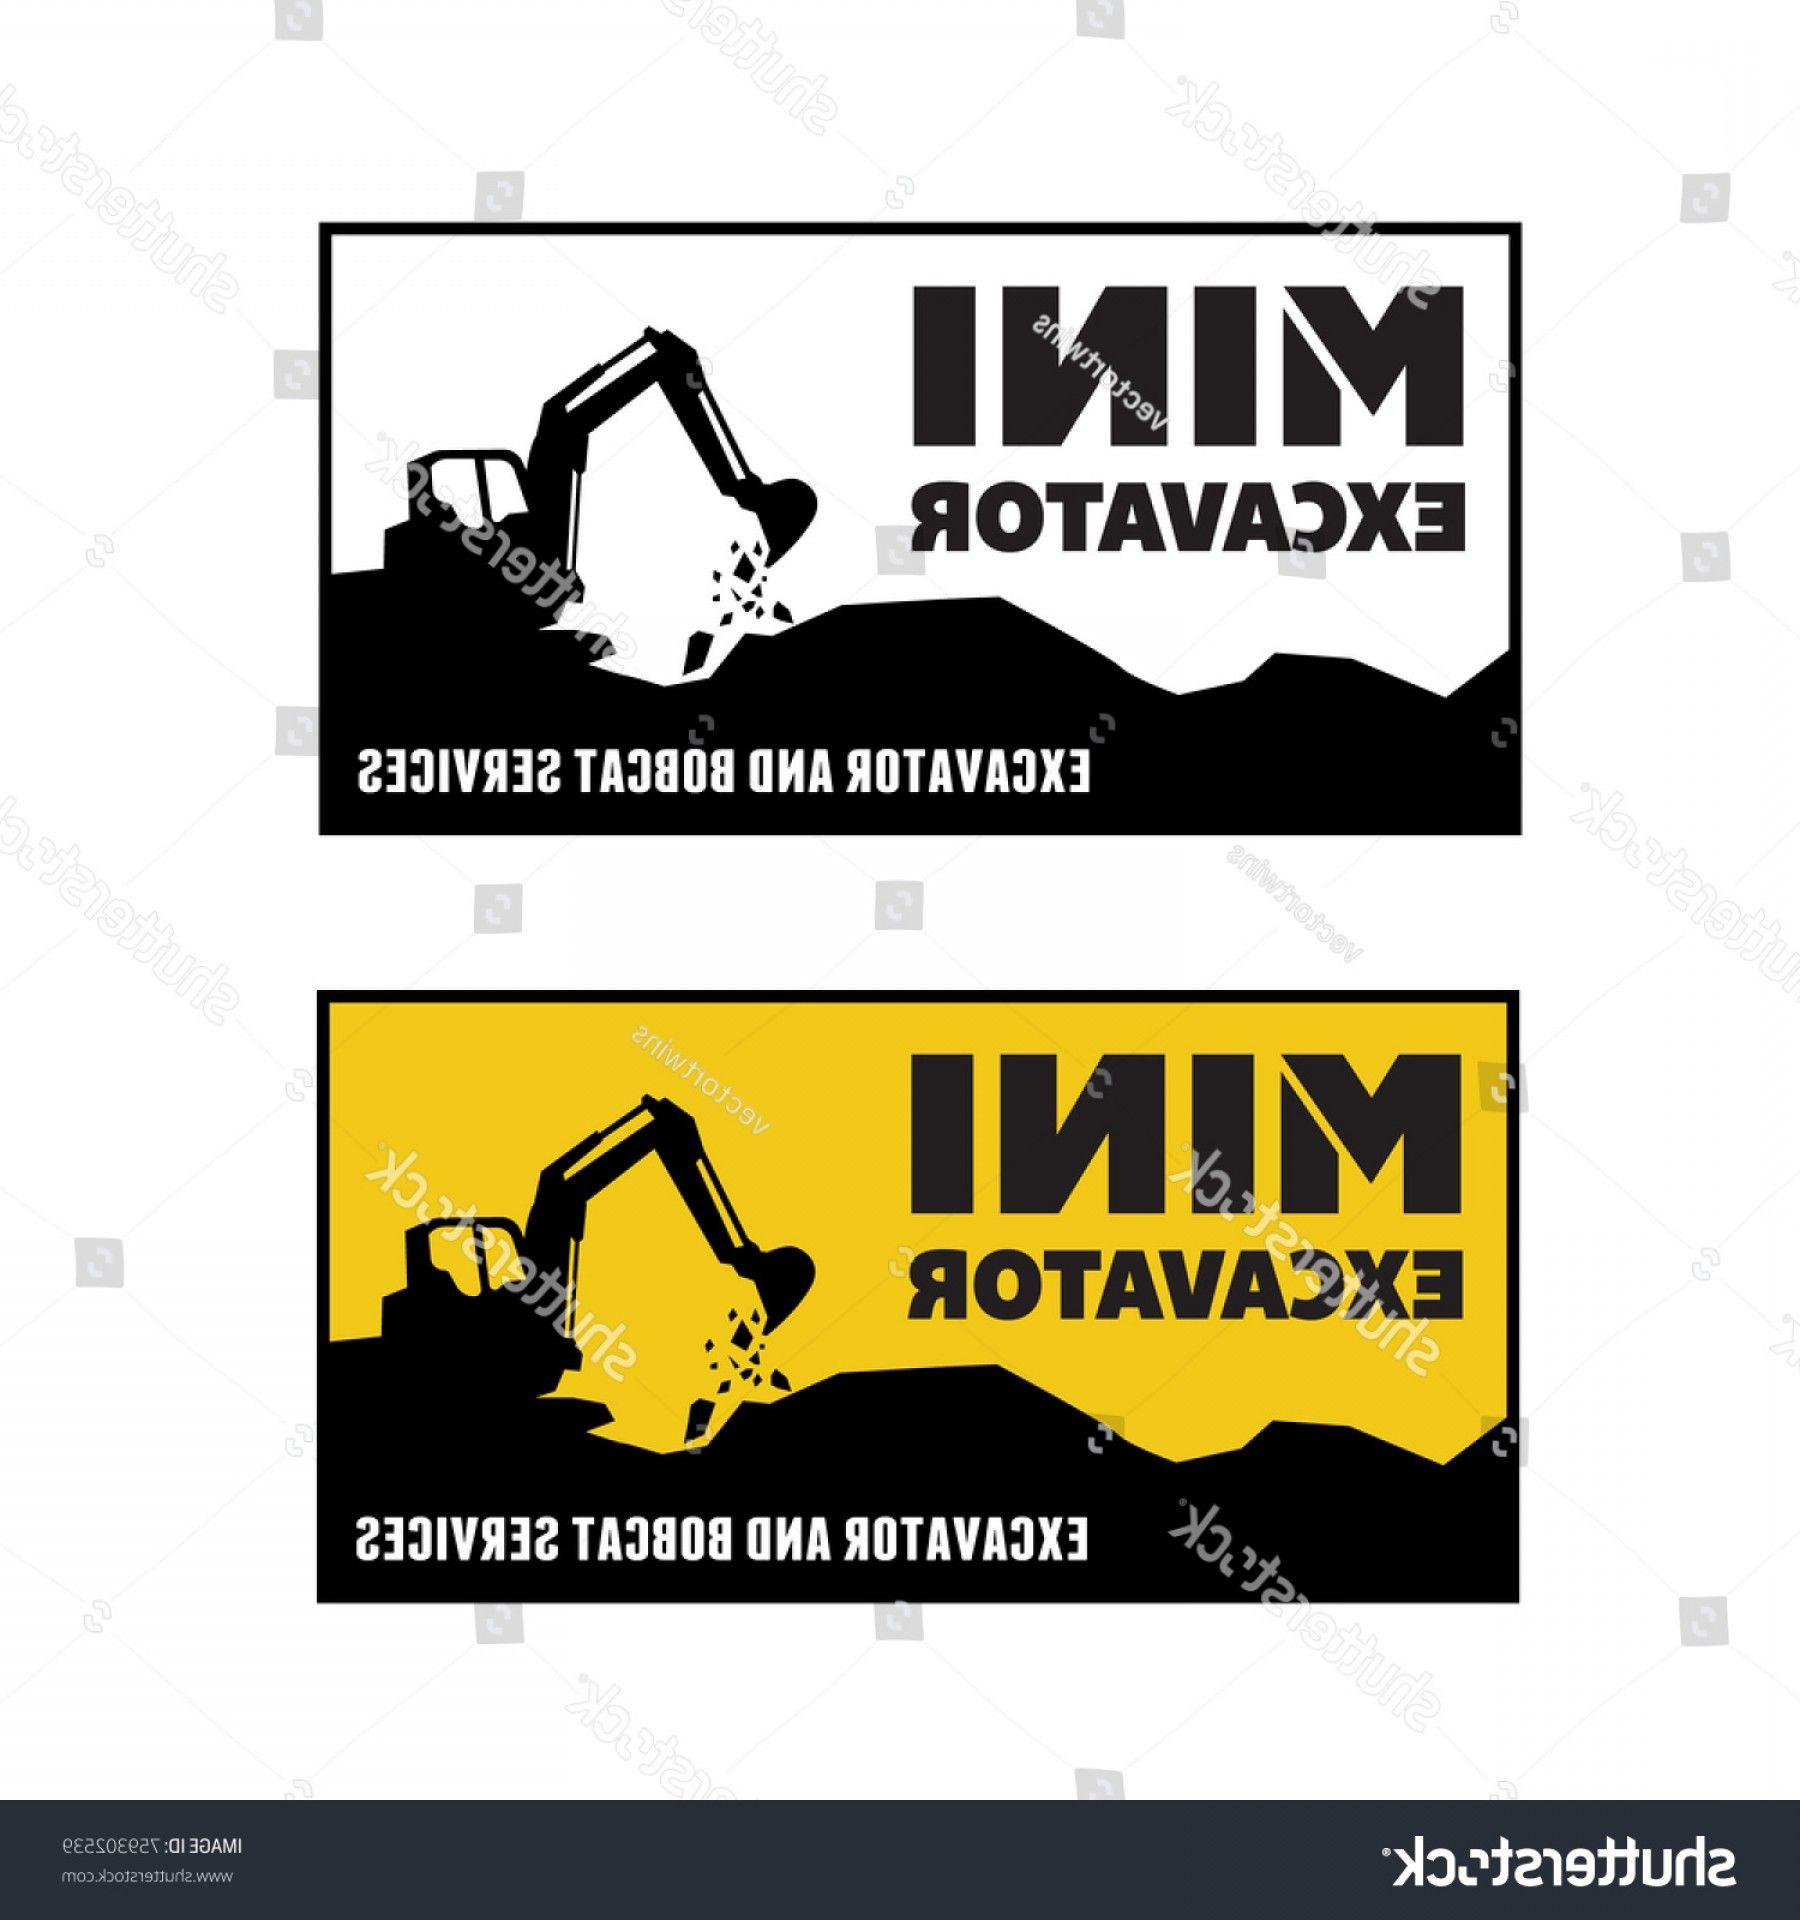 Backhoe Logo - Excavator Backhoe Logo Vector Illustration